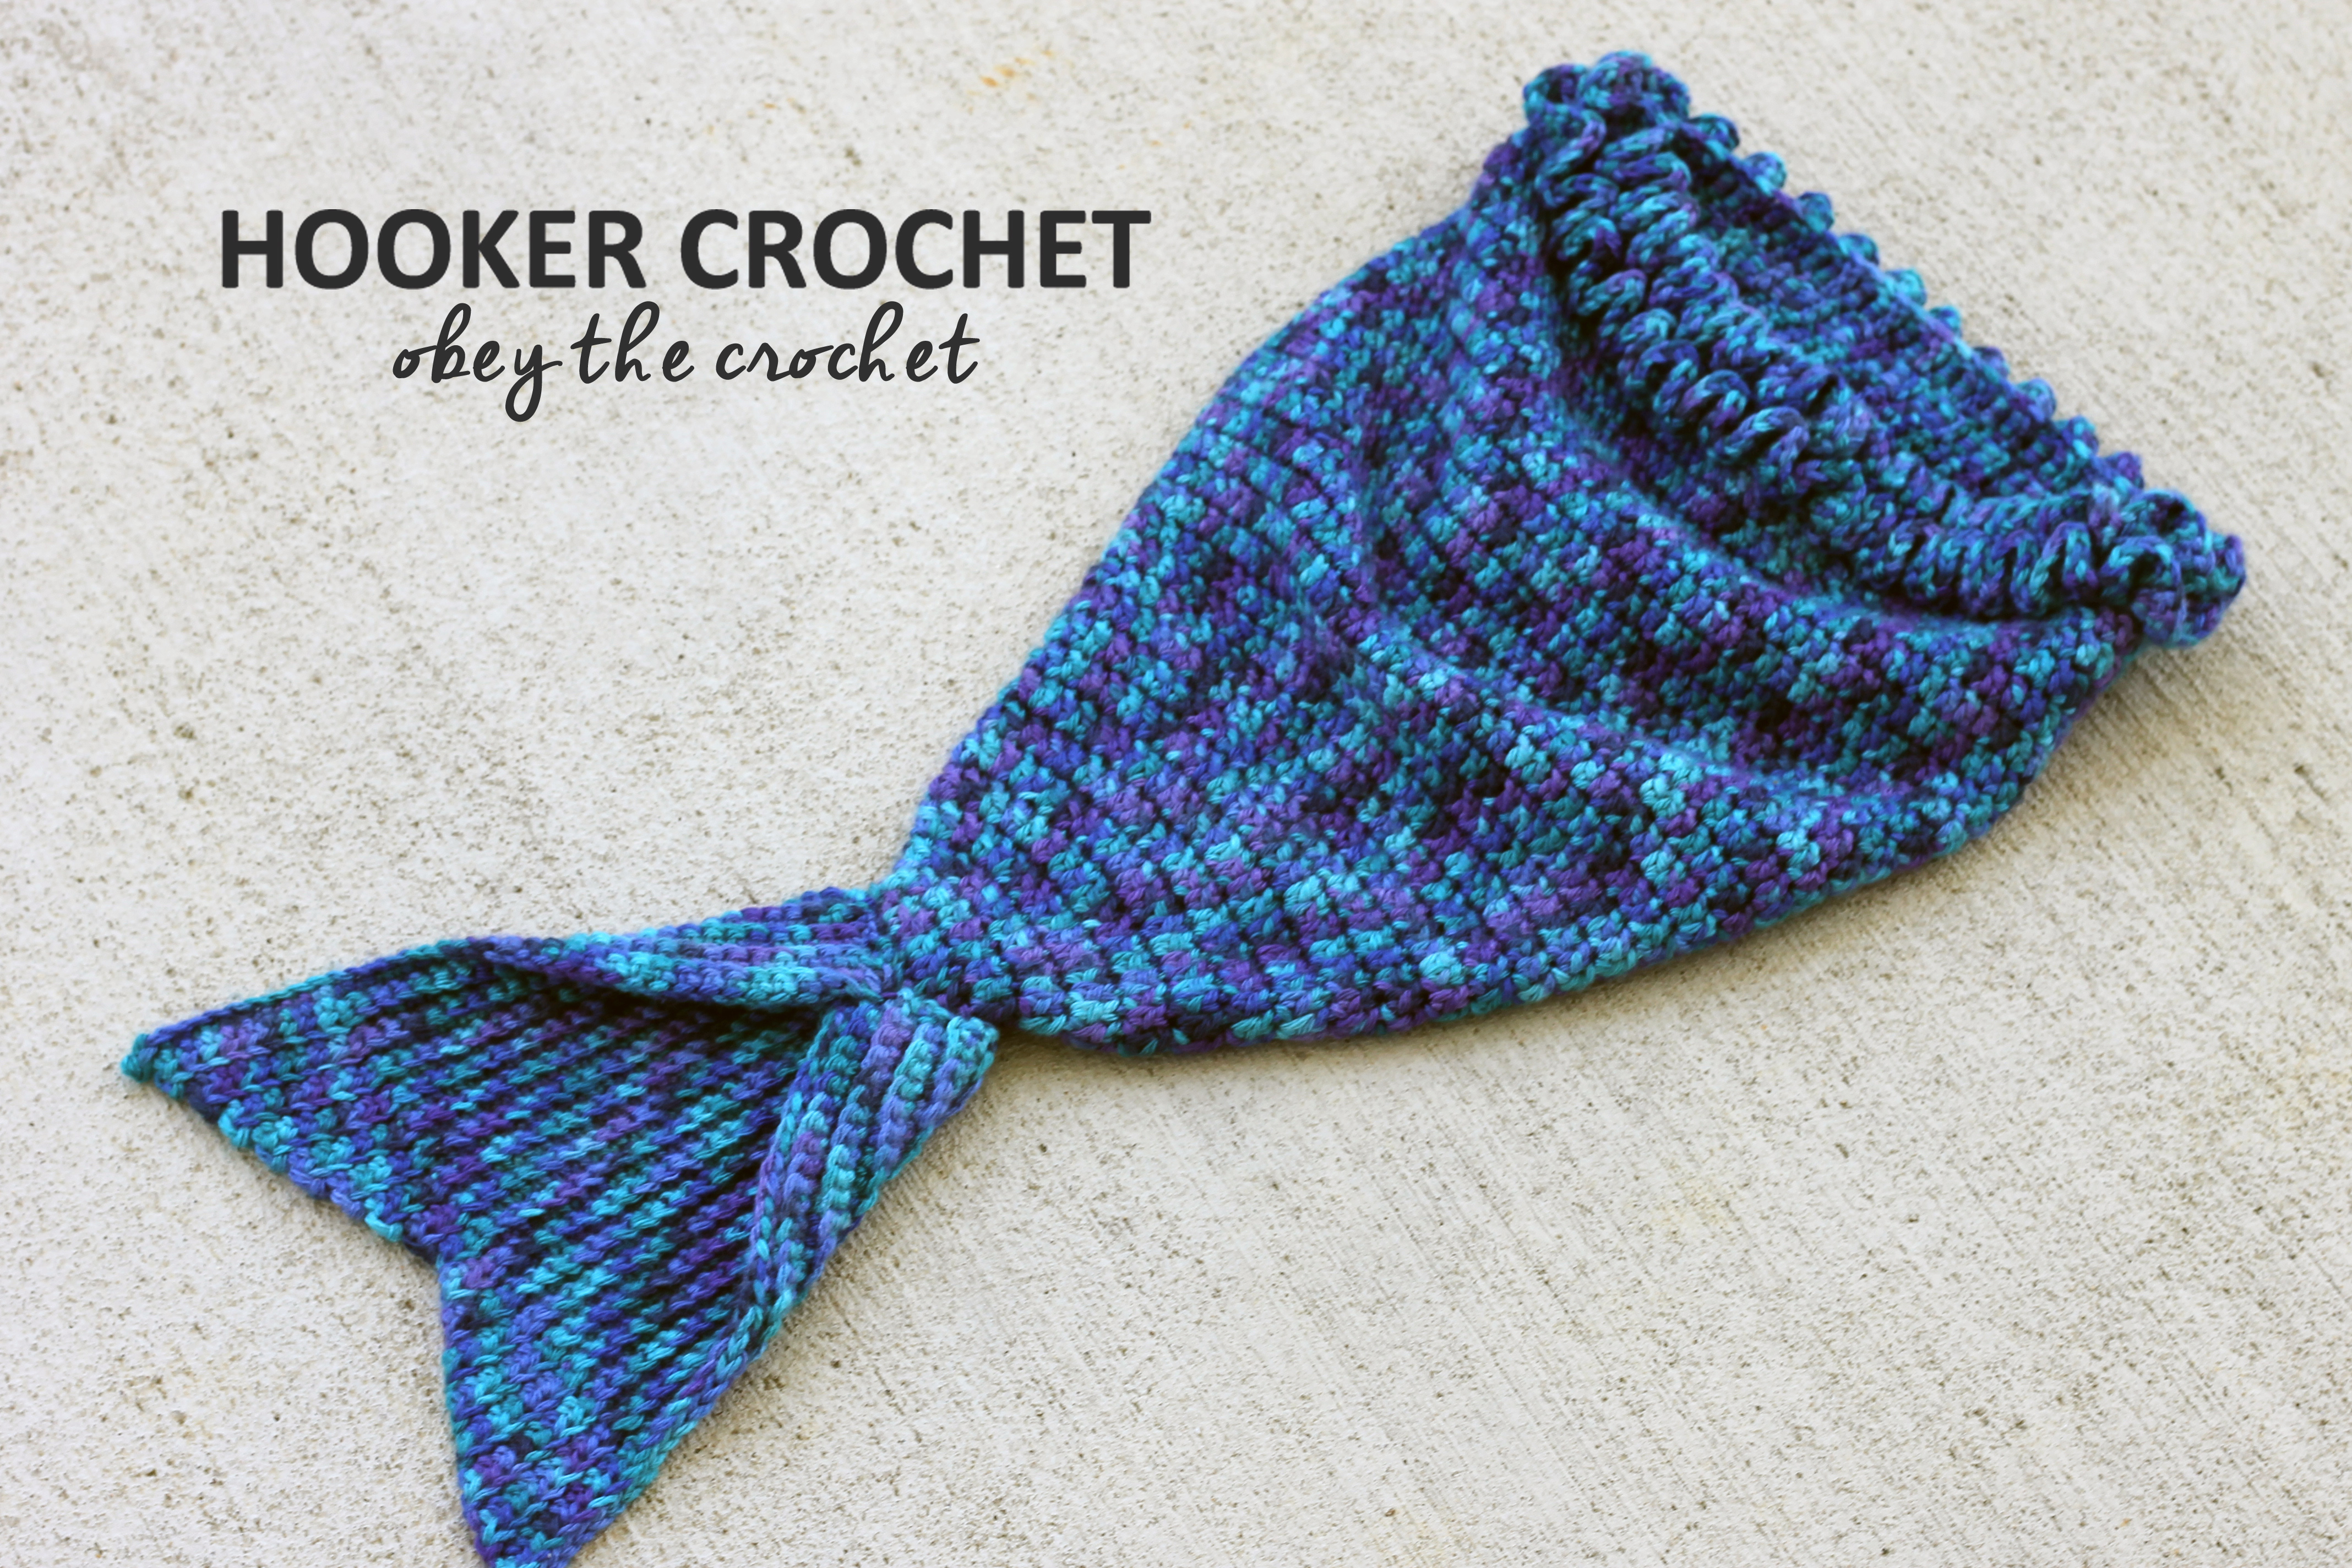 Caron Crochet Patterns Mystic Mermaid Cocoon Free Crochet Pattern In Post Hooker Crochet